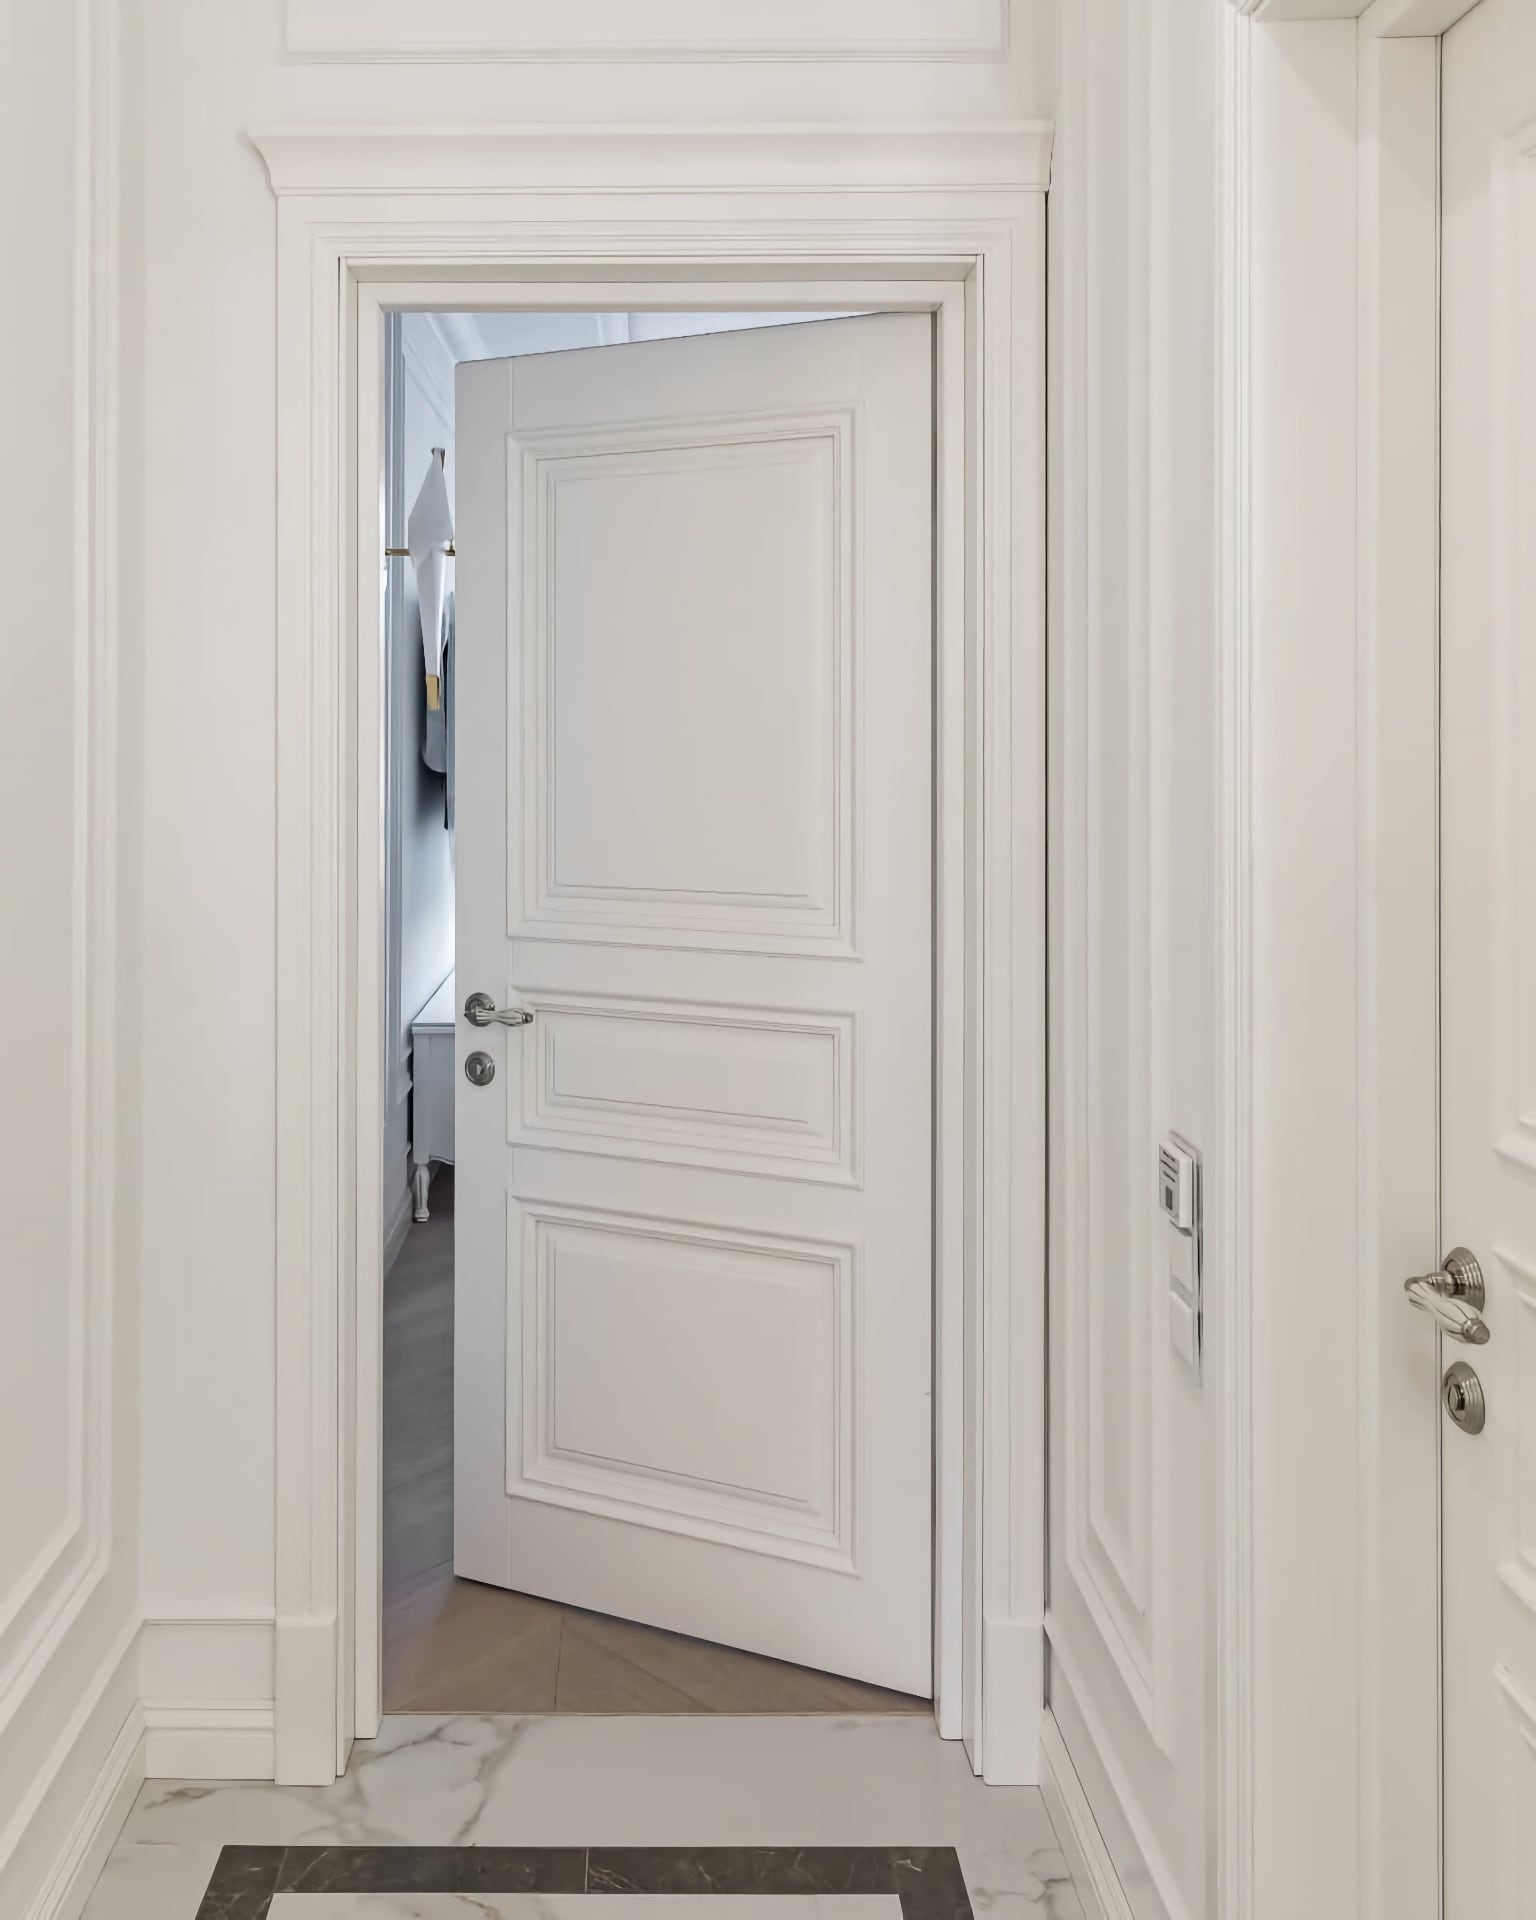 Комнатная дверь – филёнчатая дверь с фигурными наличниками